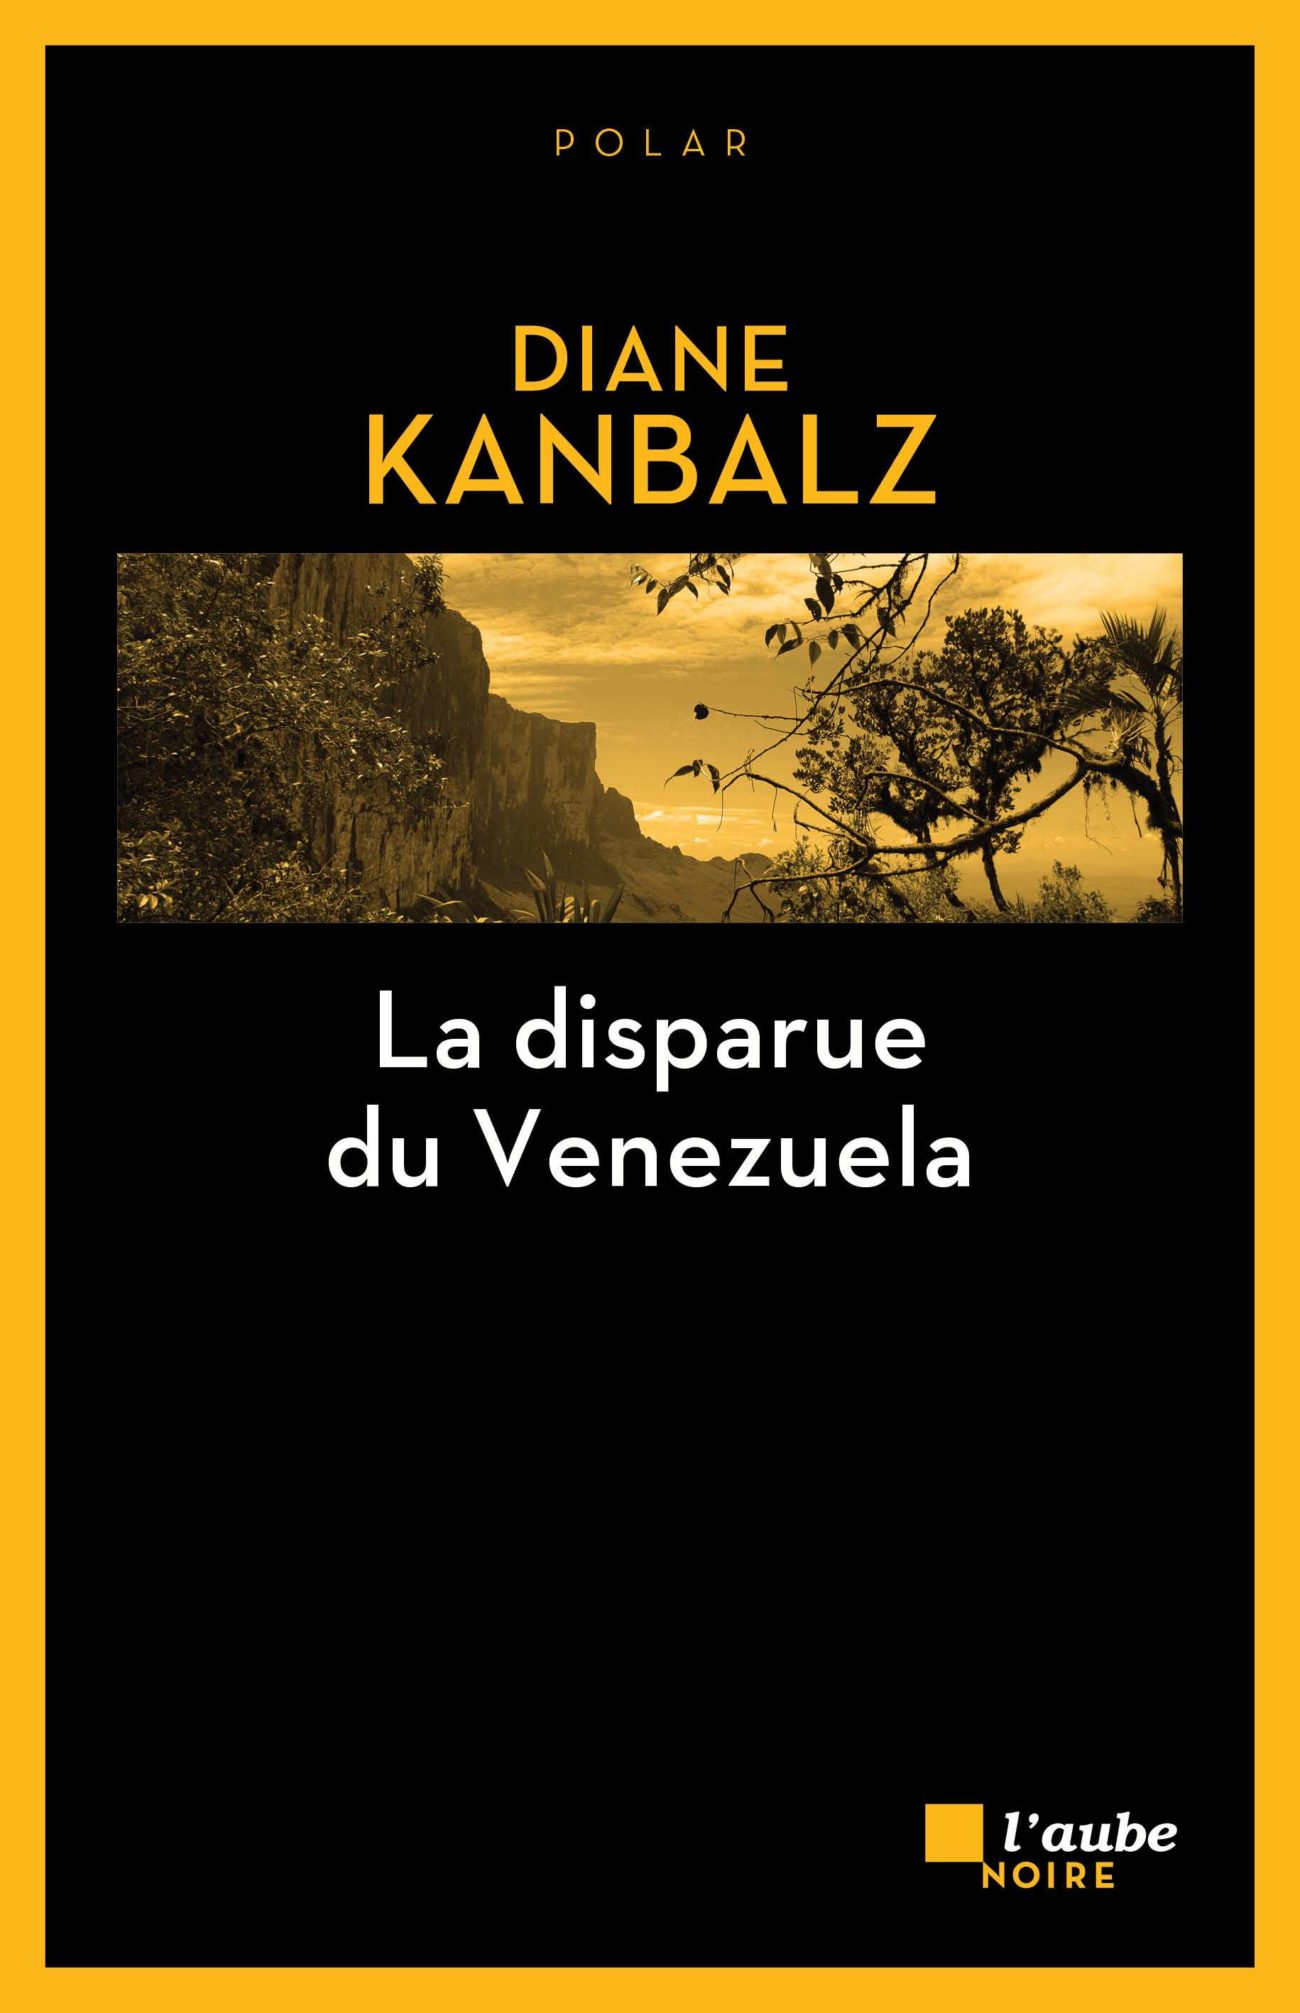 La disparue du Venezuela